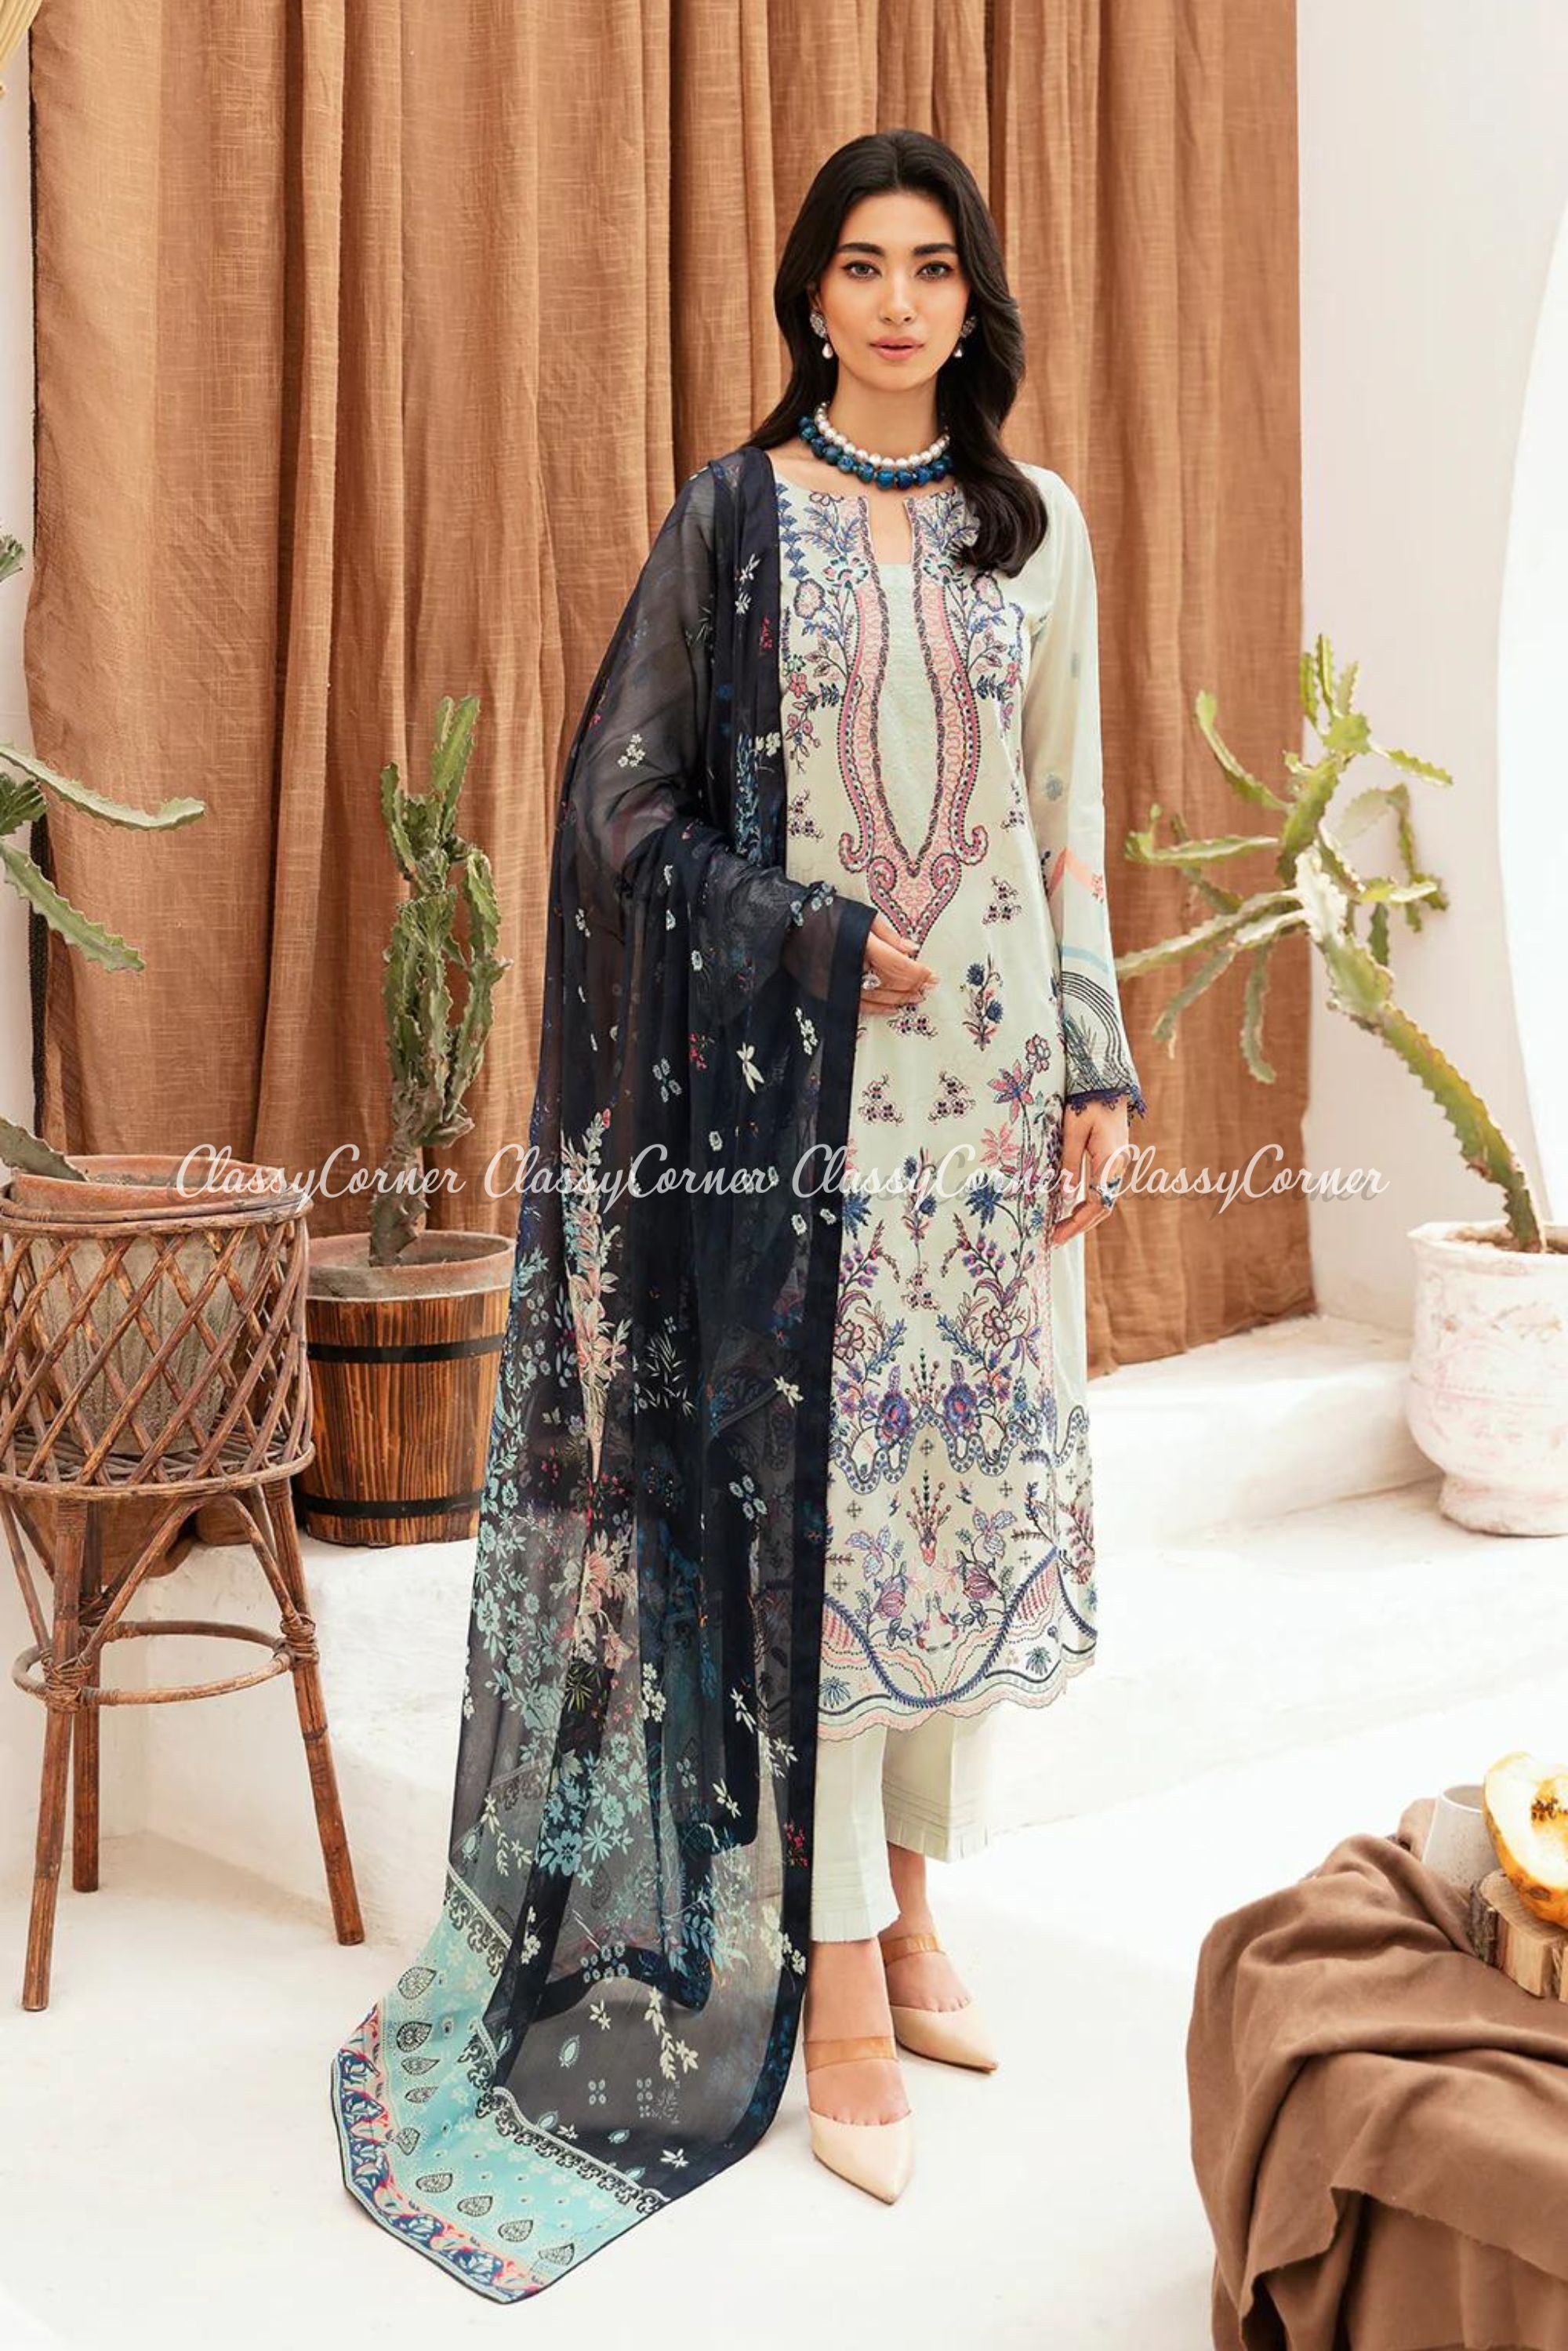 Simple Semi Formal Dresses Pakistani 